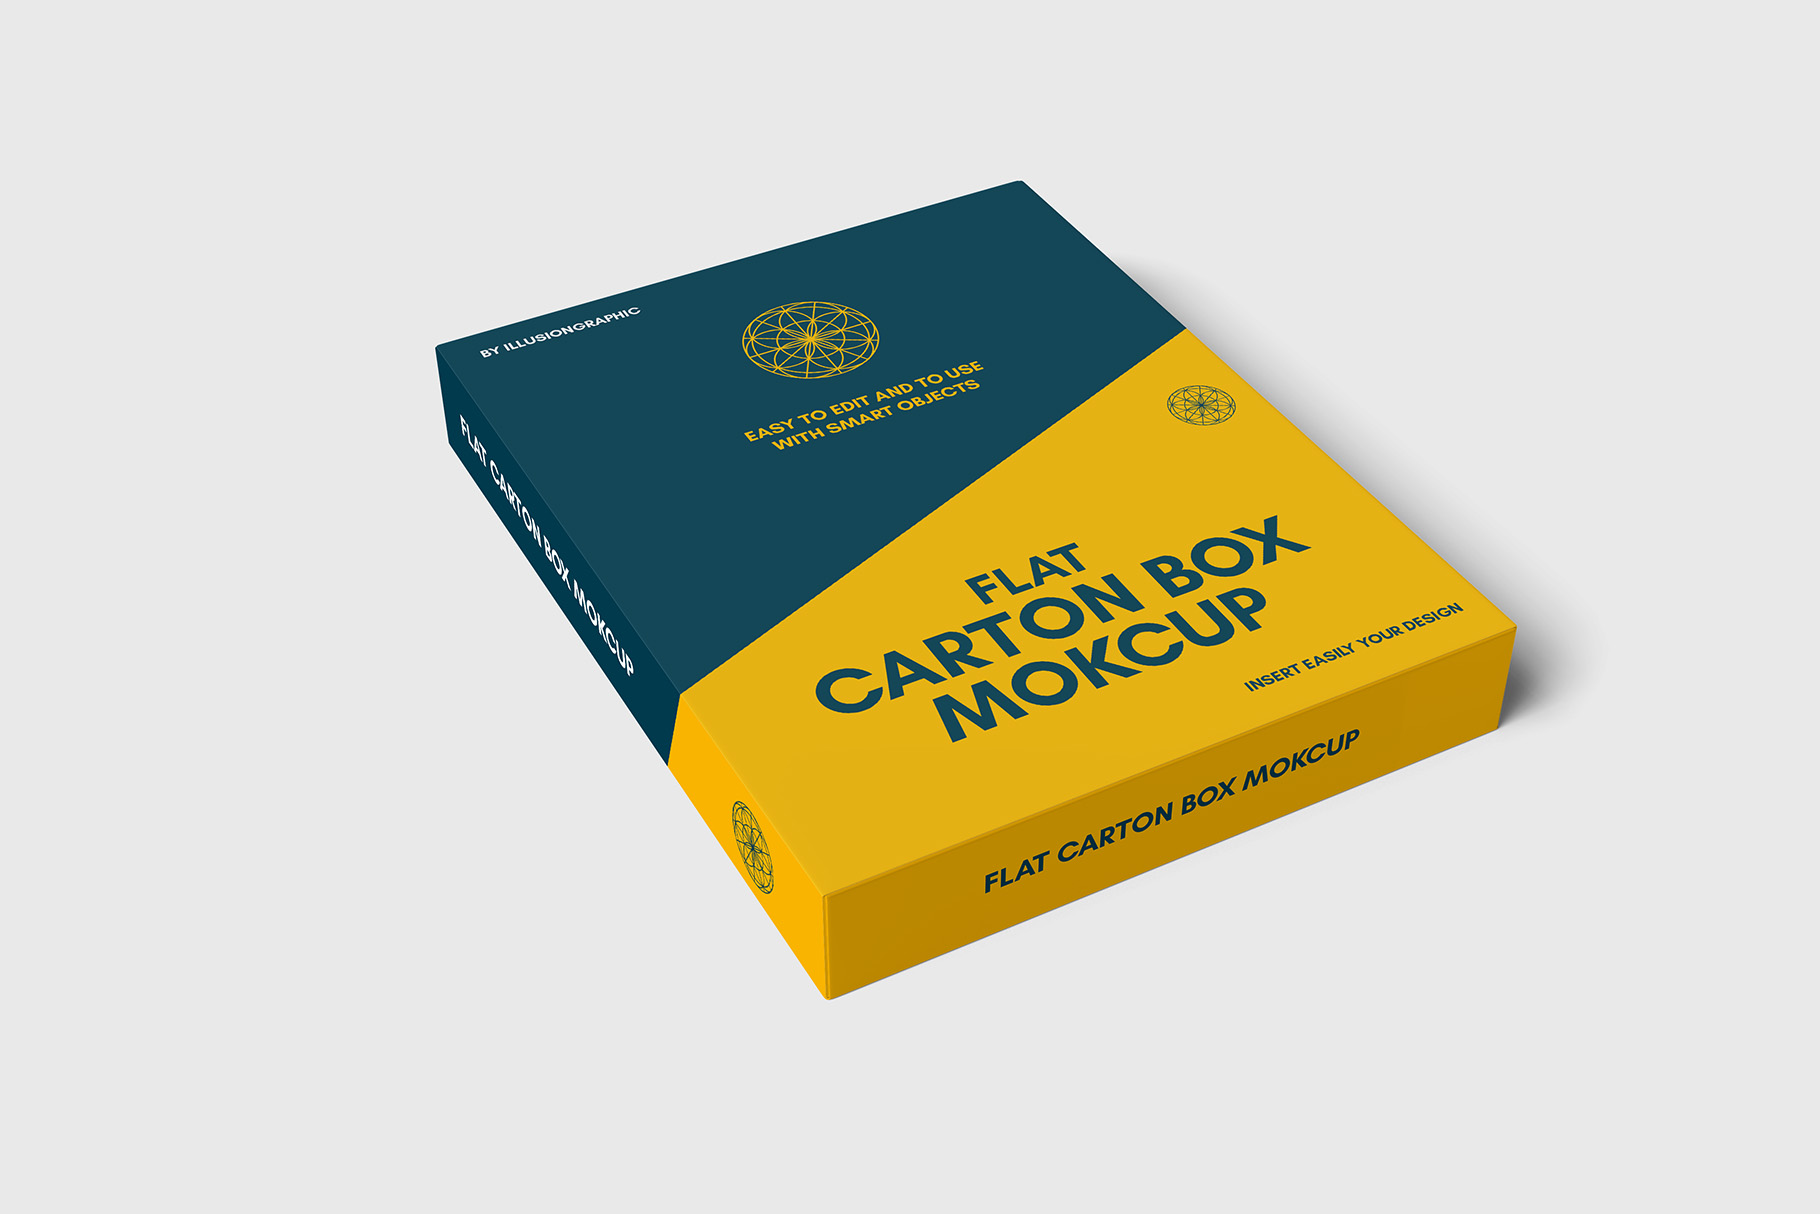 Download Flat Carton Box Mockup - 8 views